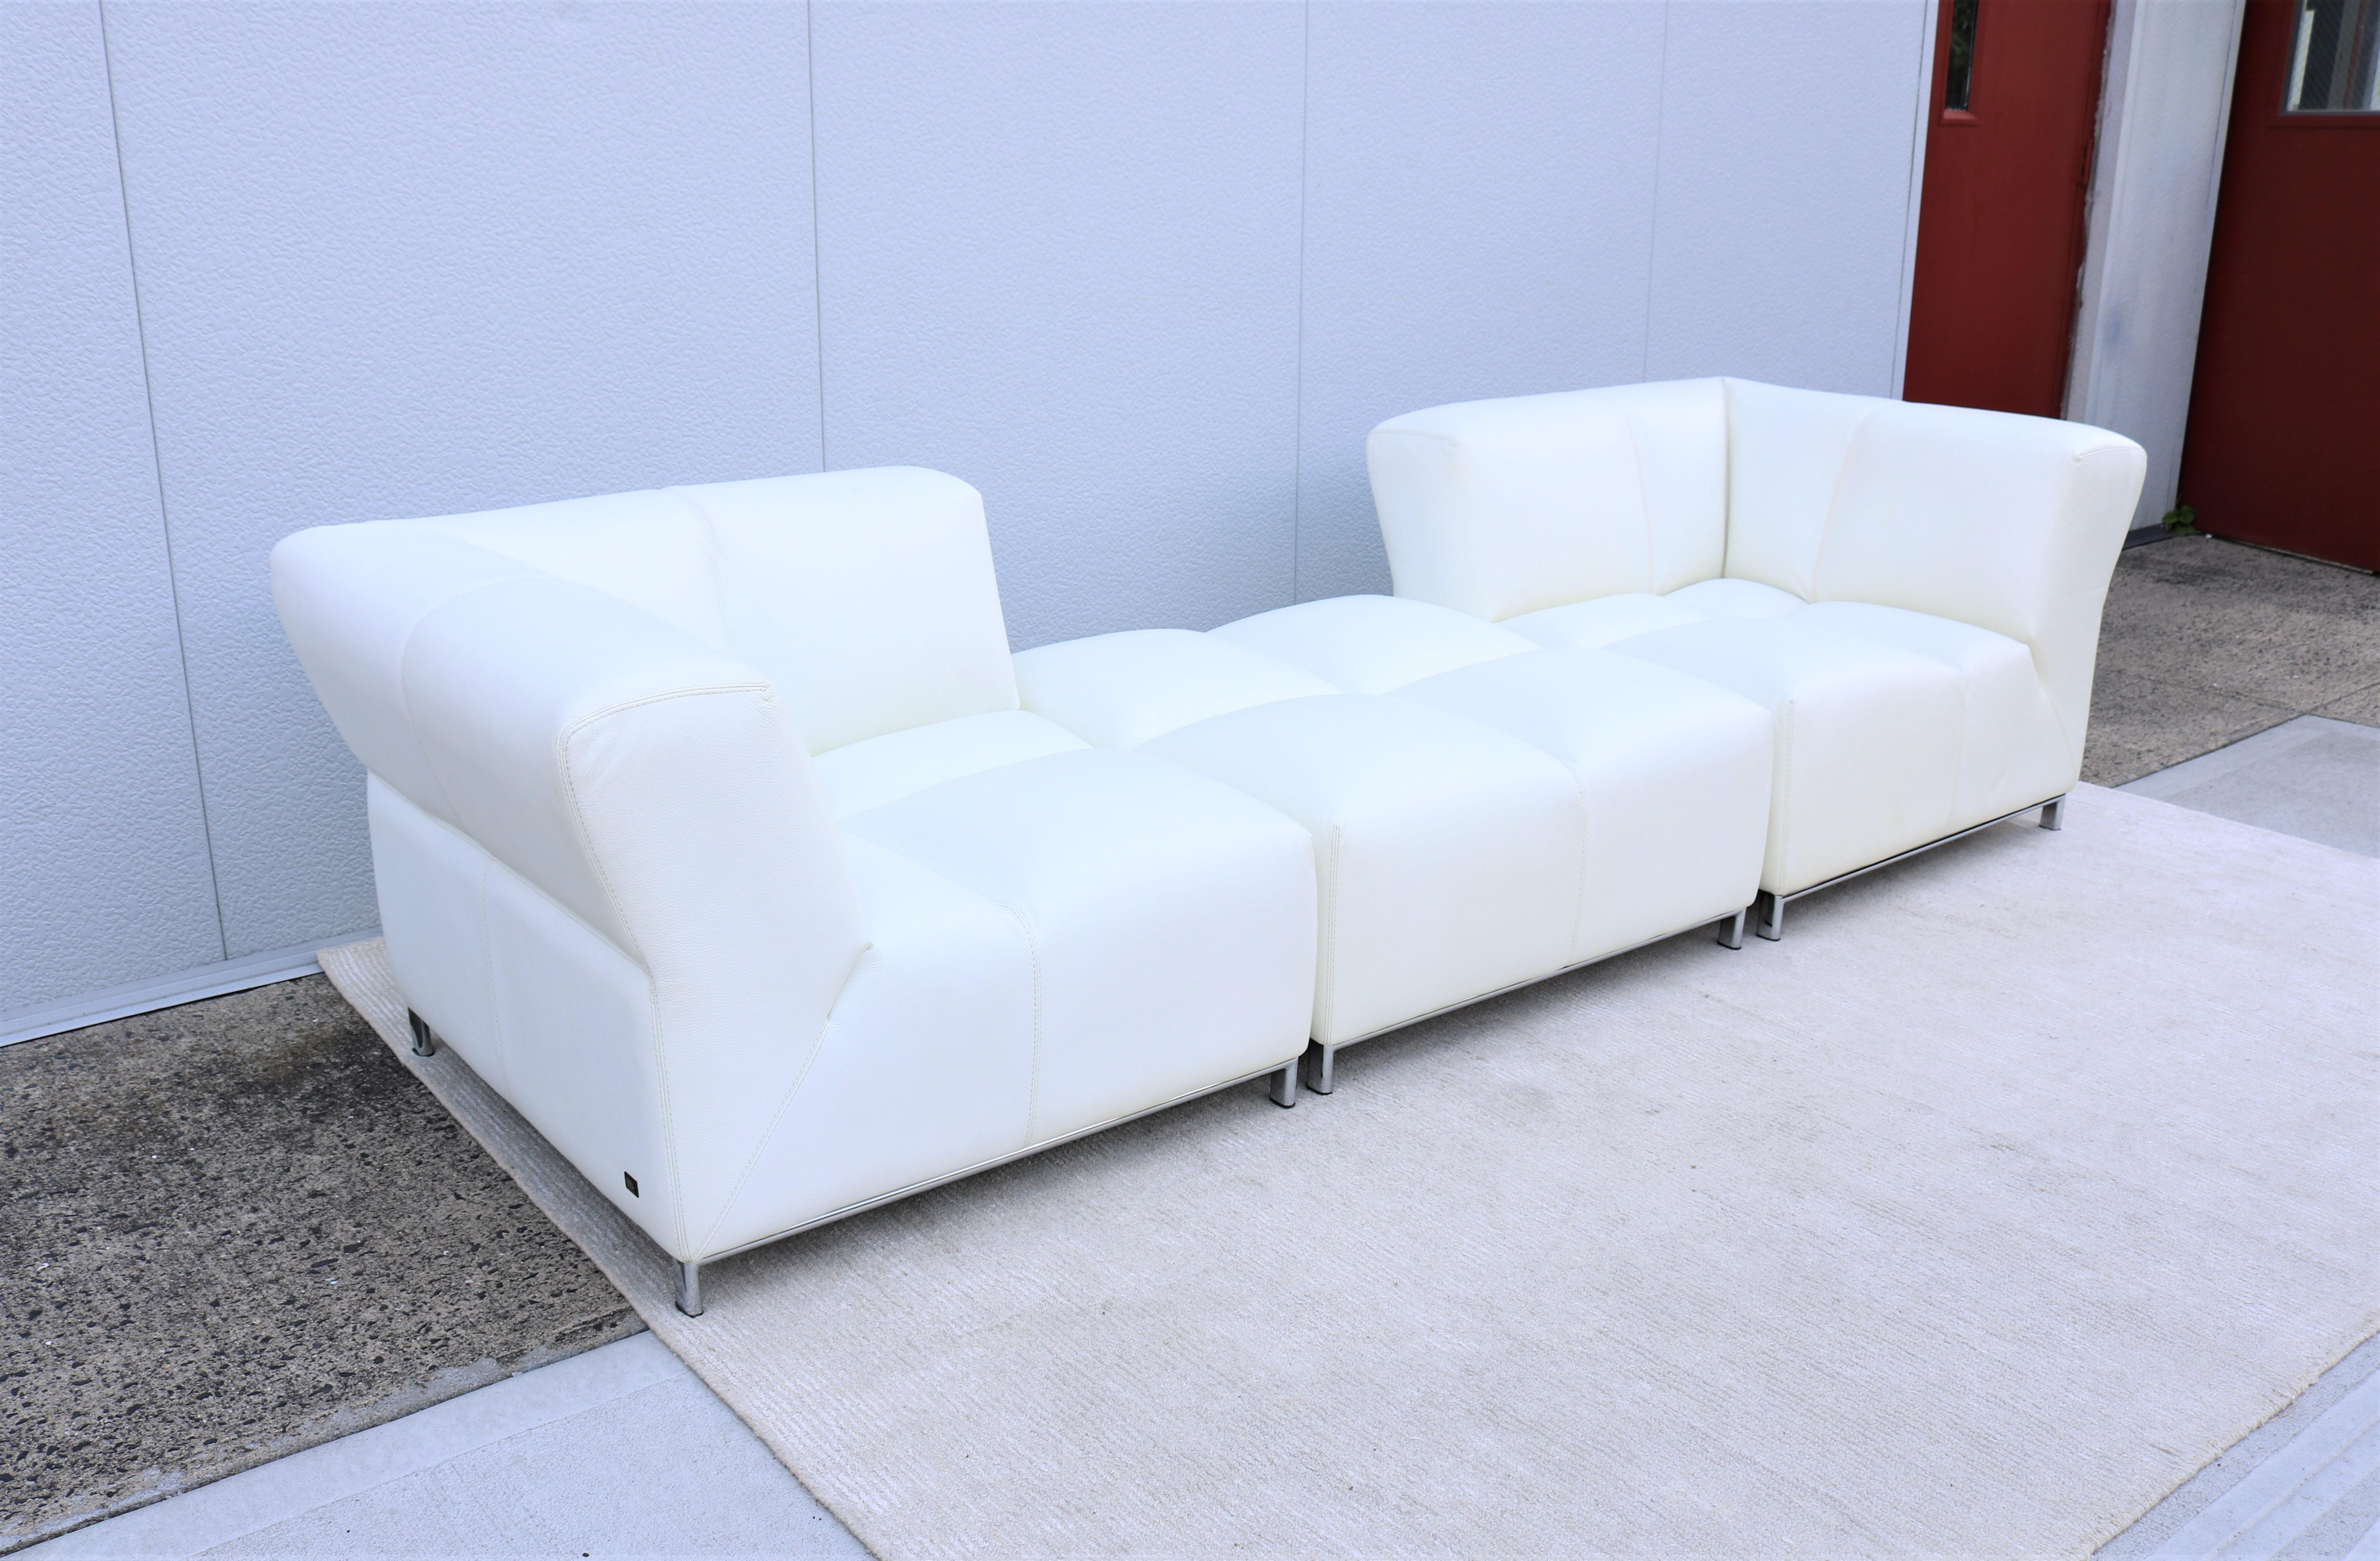 Late 20th Century Italian Modern Domino Modular White Leather Sofa by Gamma Arredamenti For Sale